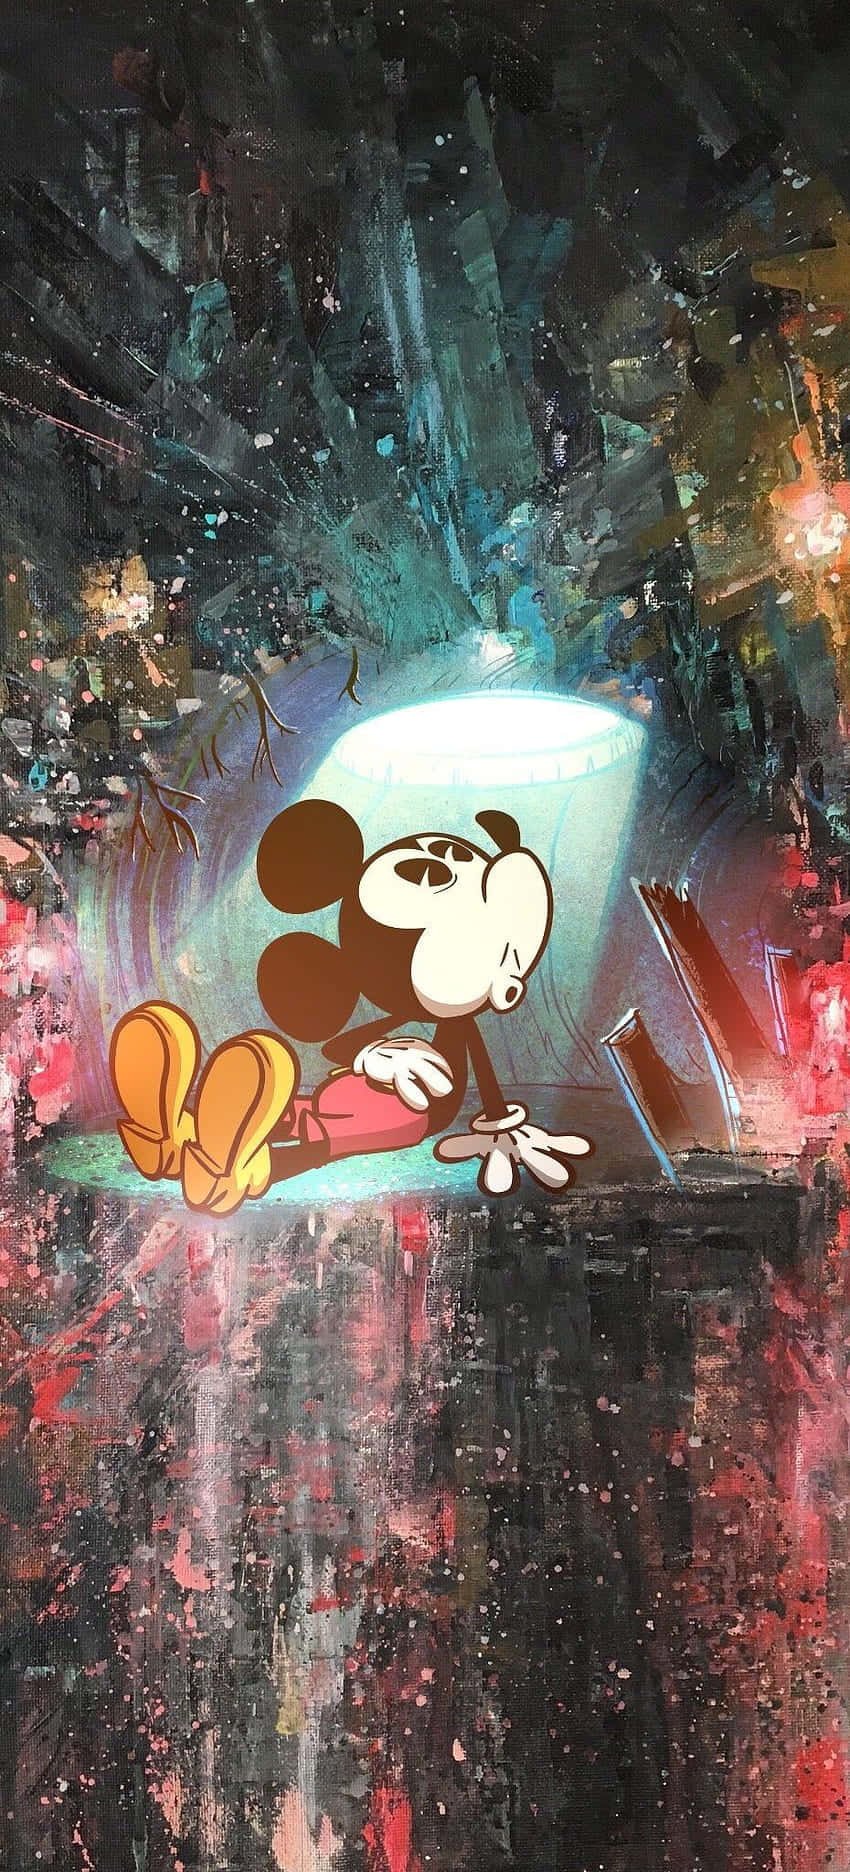 Hold dig cool og se cool ud med Mickey Mouse! Wallpaper